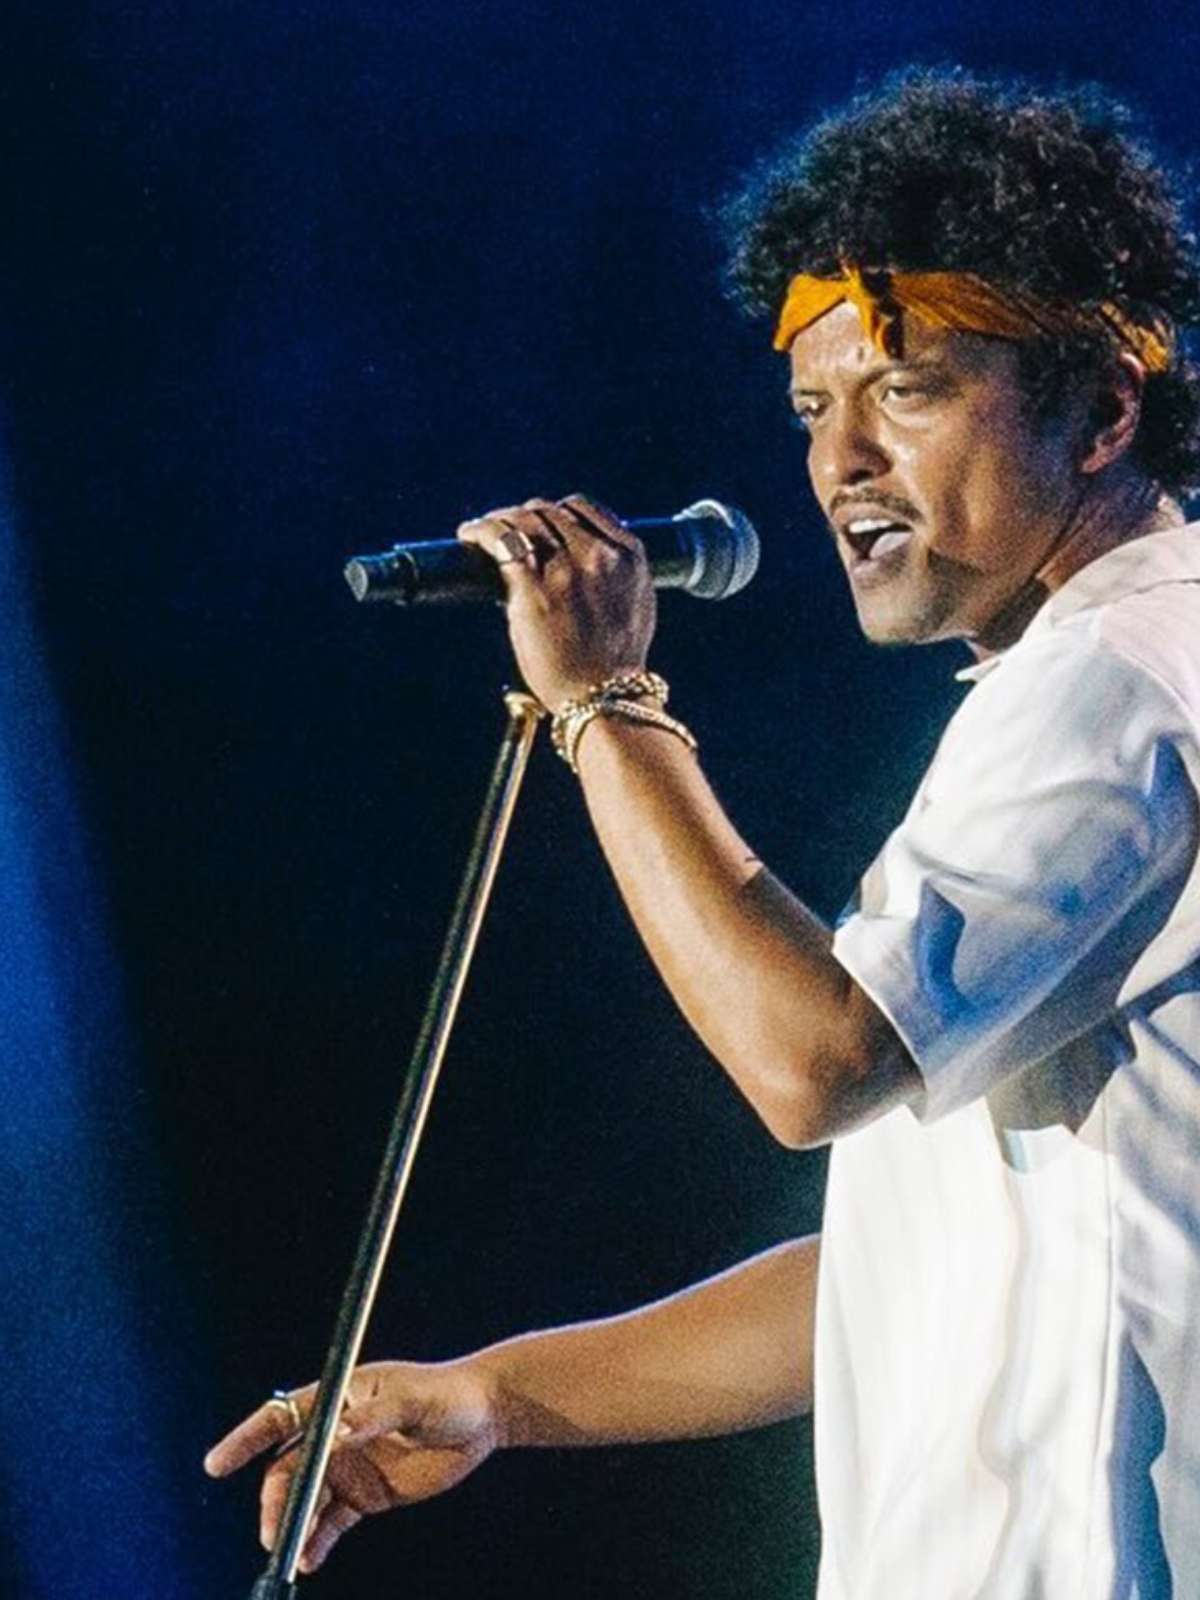 HZ, Bruno Mars faz show com 'Evidências' no The Town e justifica ingresso  disputado